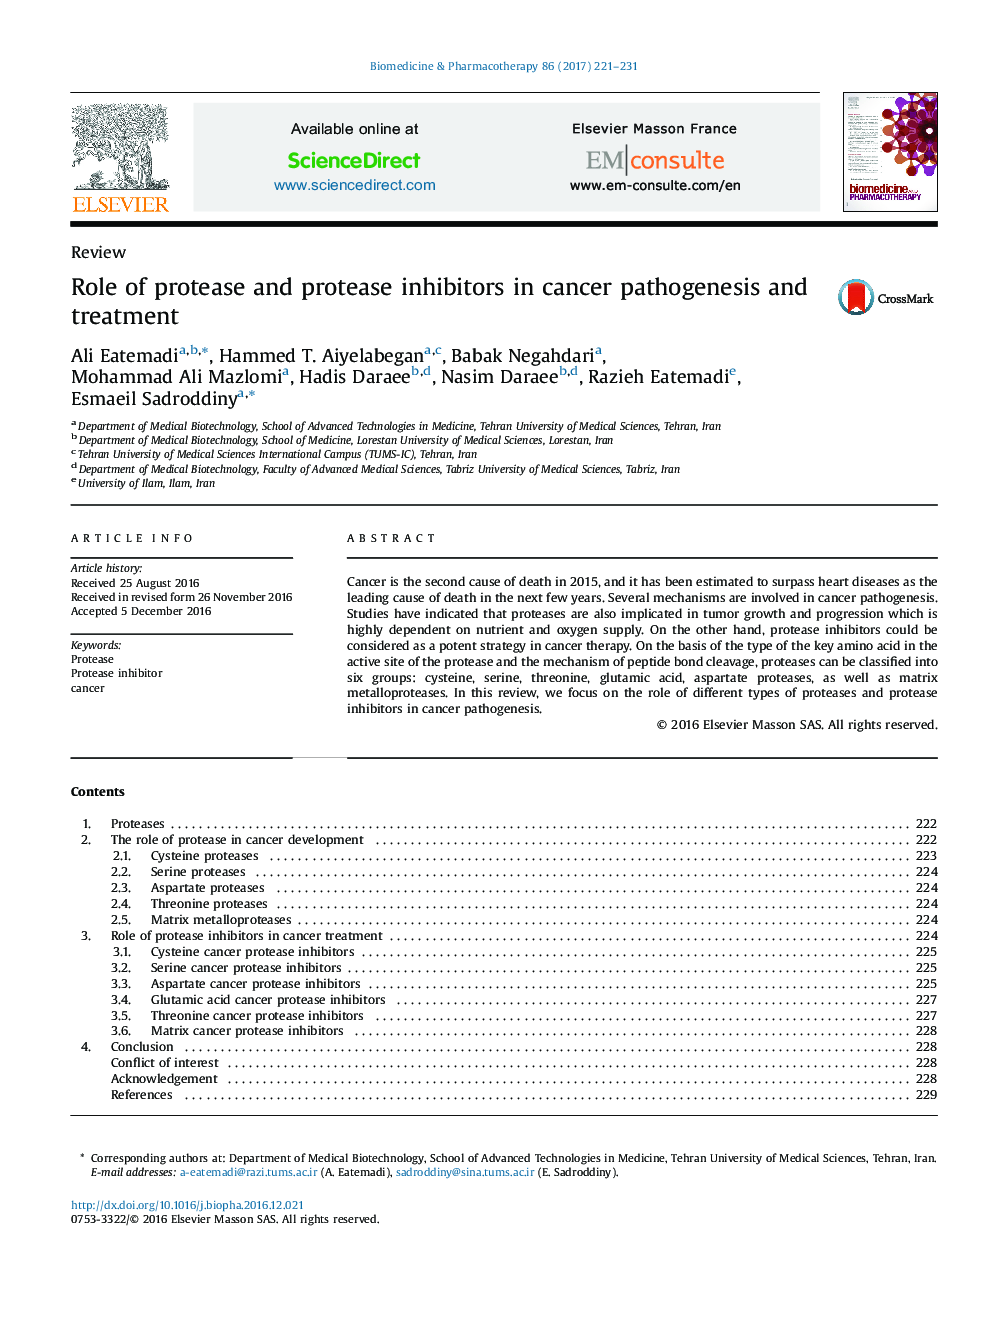 نقش مهارکننده های پروتئاز و پروتئاز در پاتوژنز و درمان سرطان 